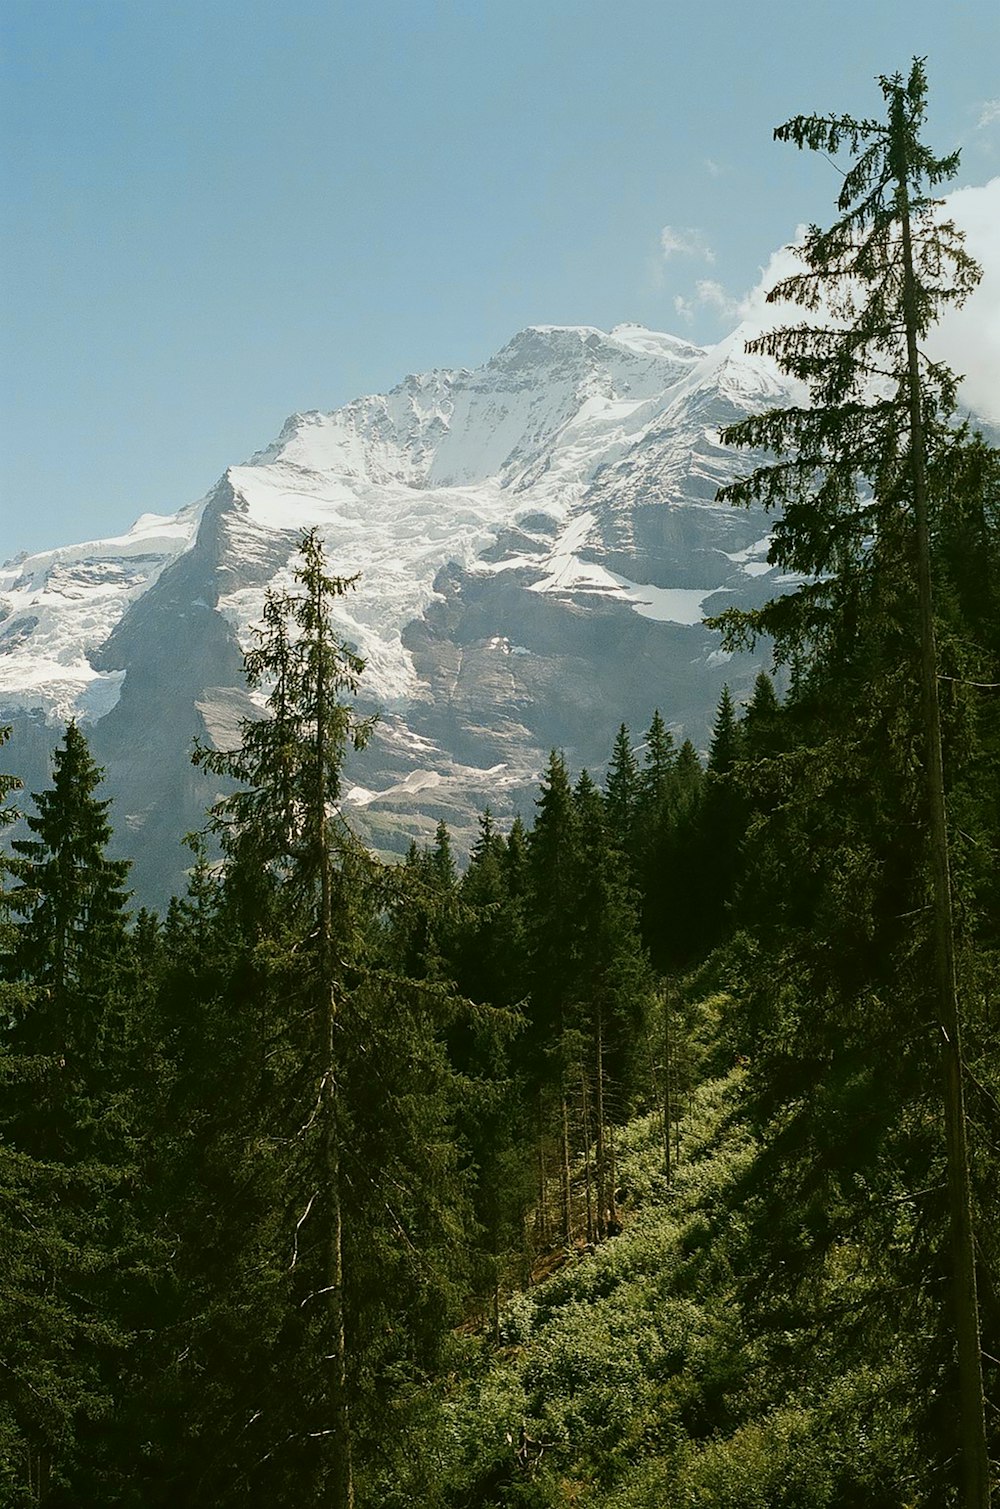 Landschaftsfotografie von Berg und Wald